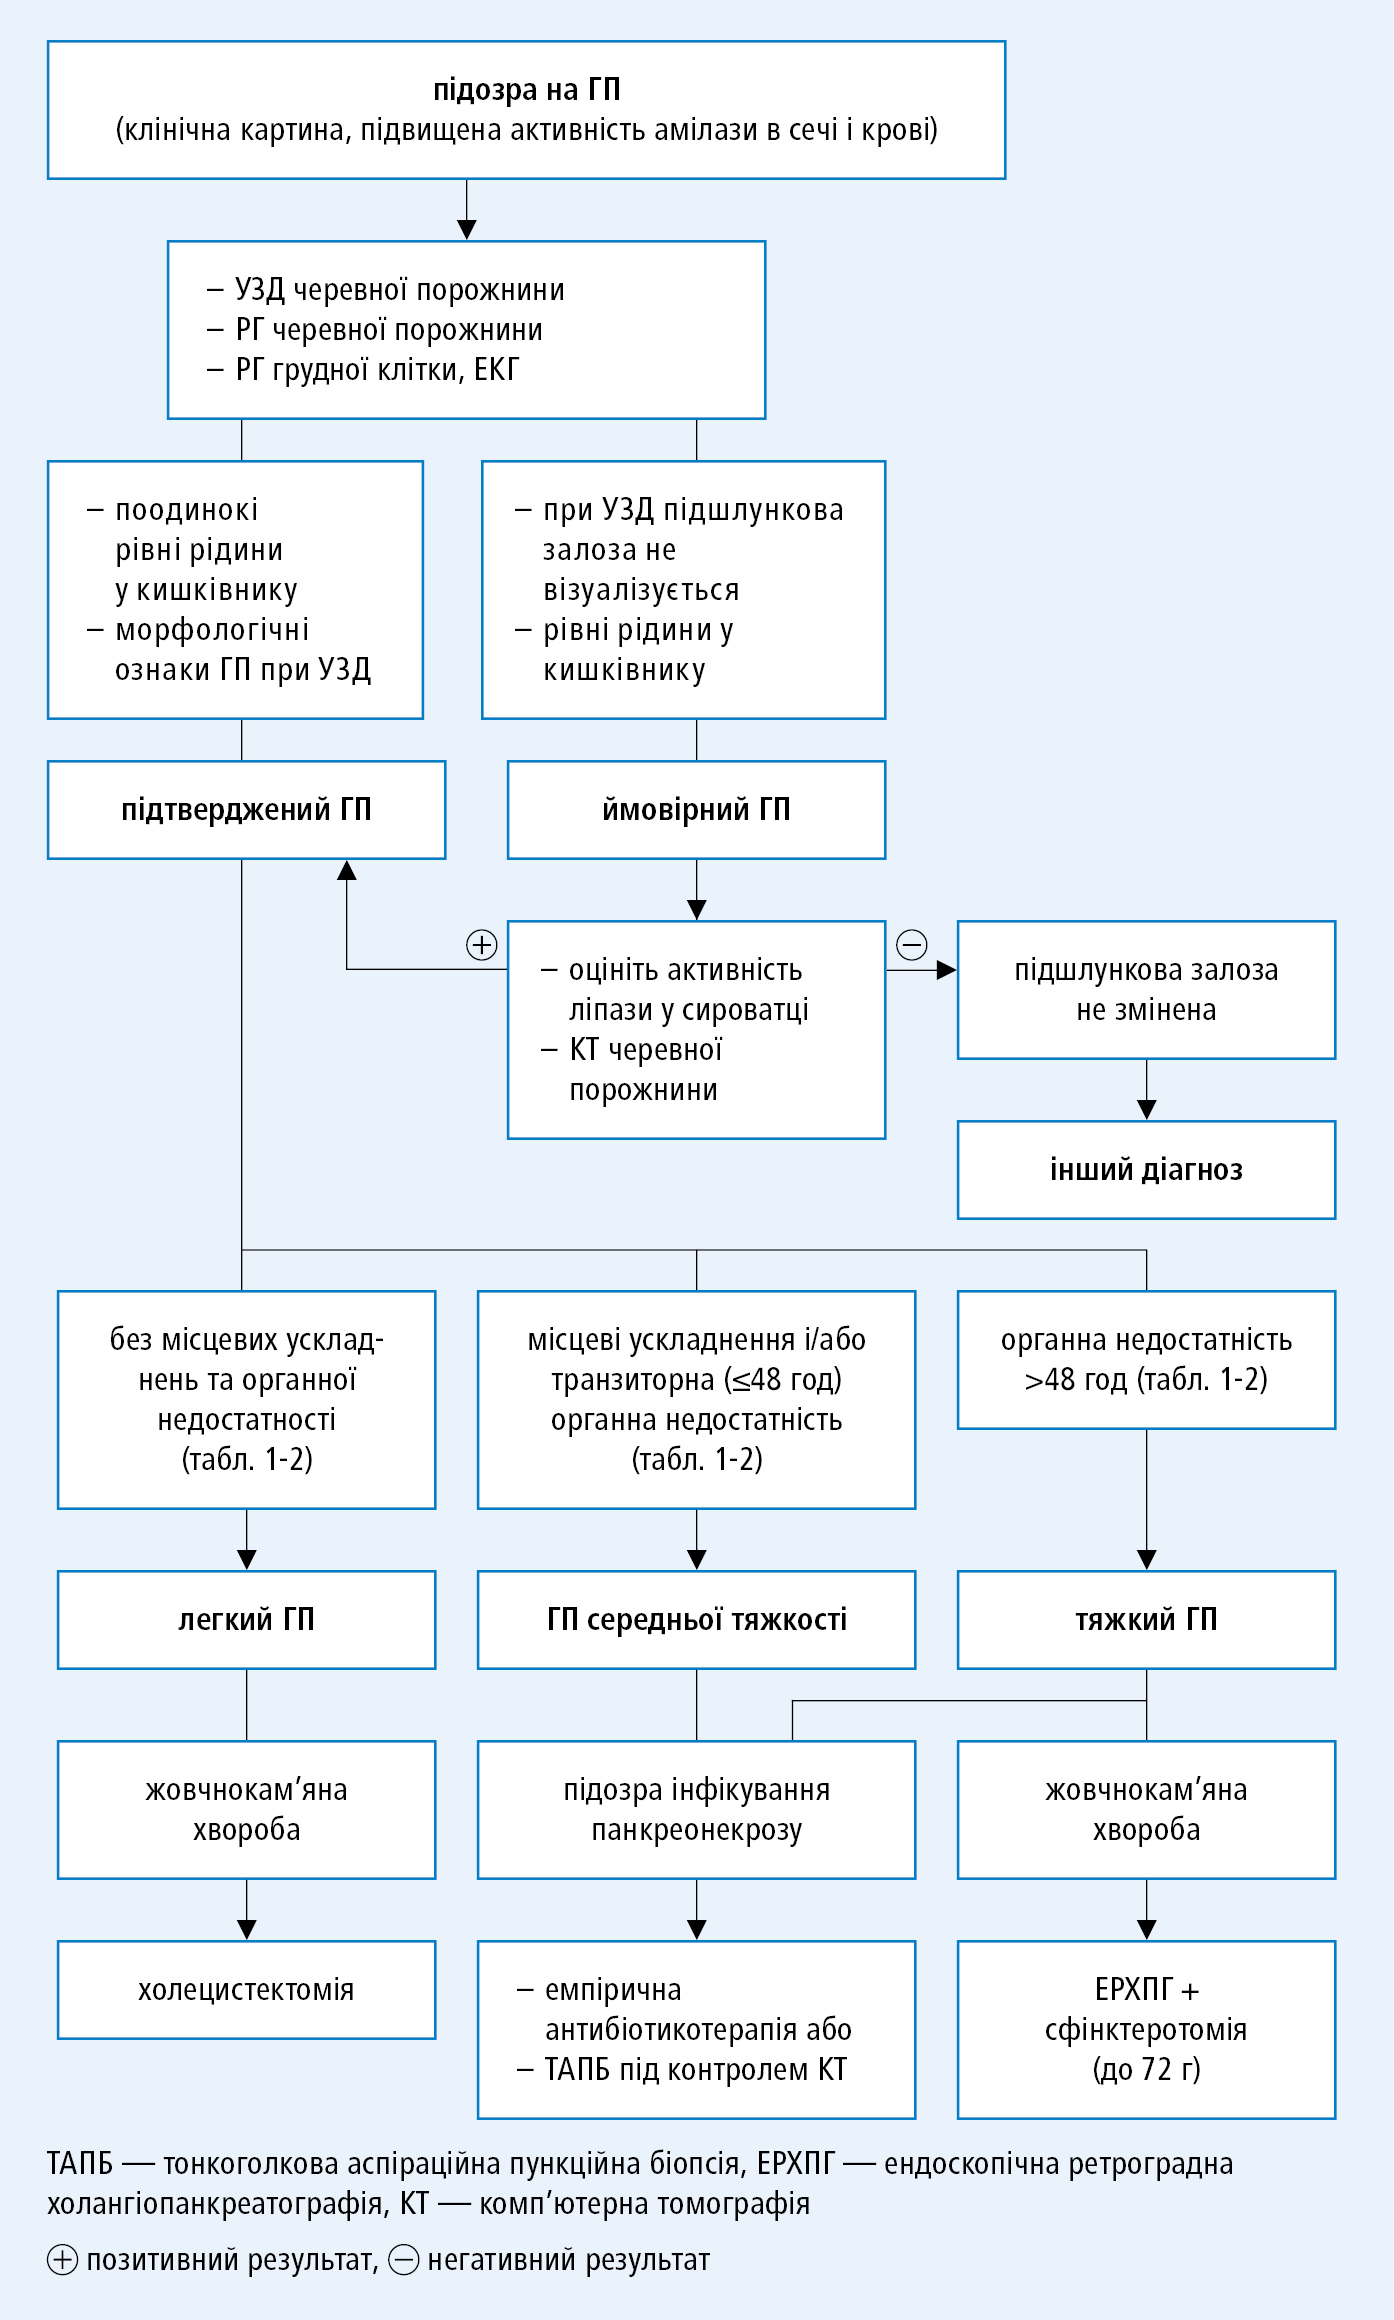 Алгоритм діагностичної тактики при гострому панкреатиті (ГП)